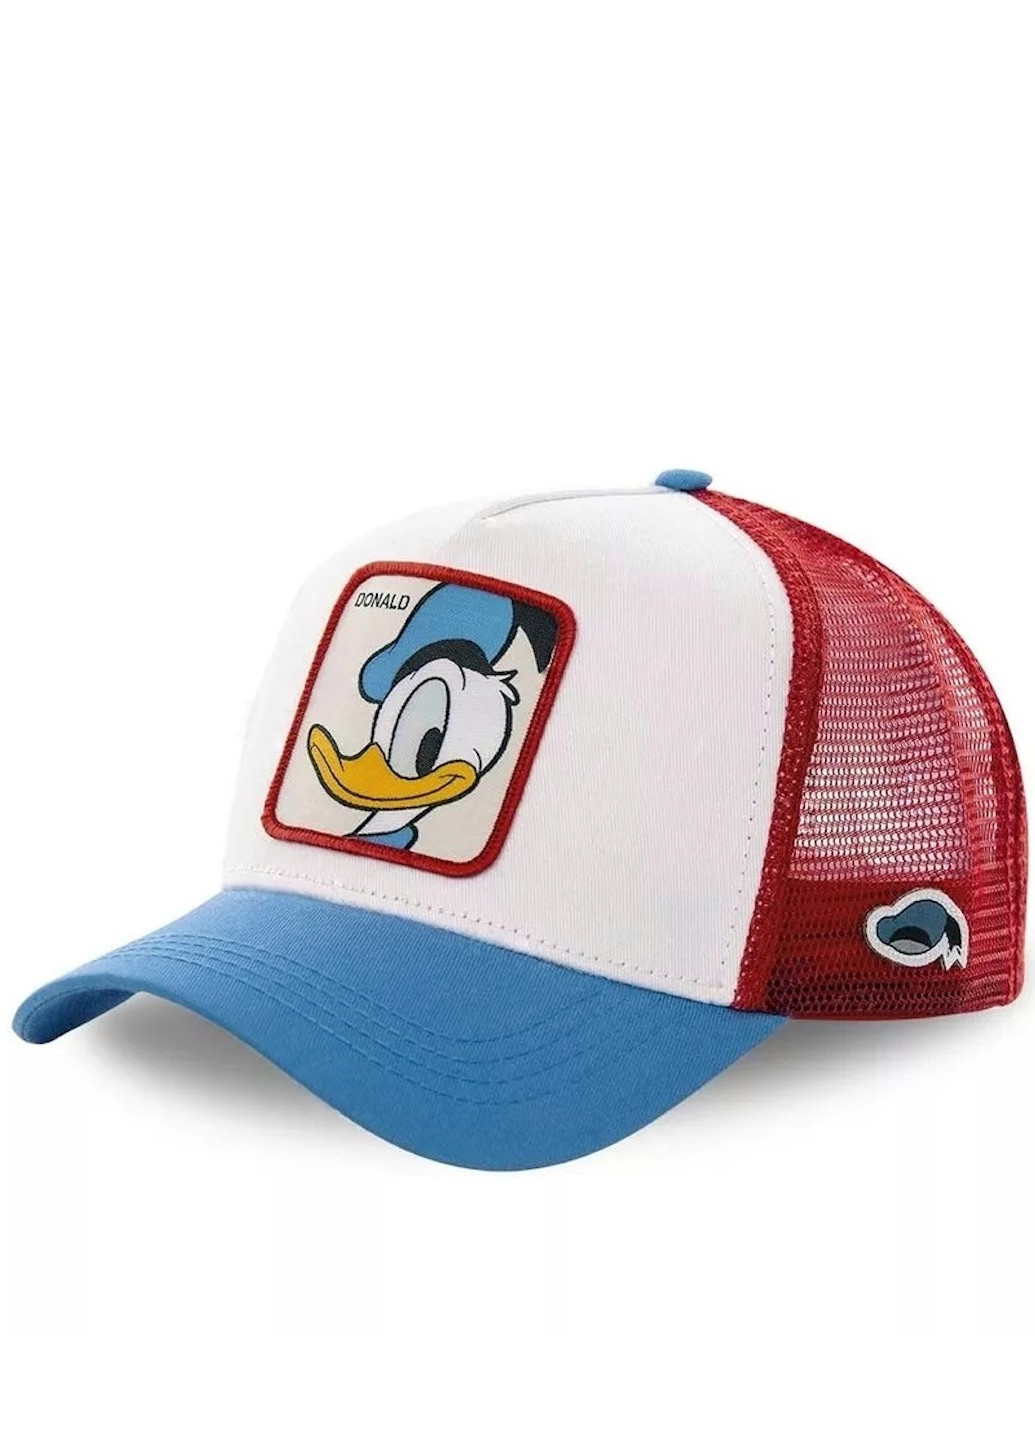 Кепка Donald Duck (Дональд Дак, мультики Дисней, Disney) с сеточкой, Унисекс WUKE One size Brand тракер (258763479)